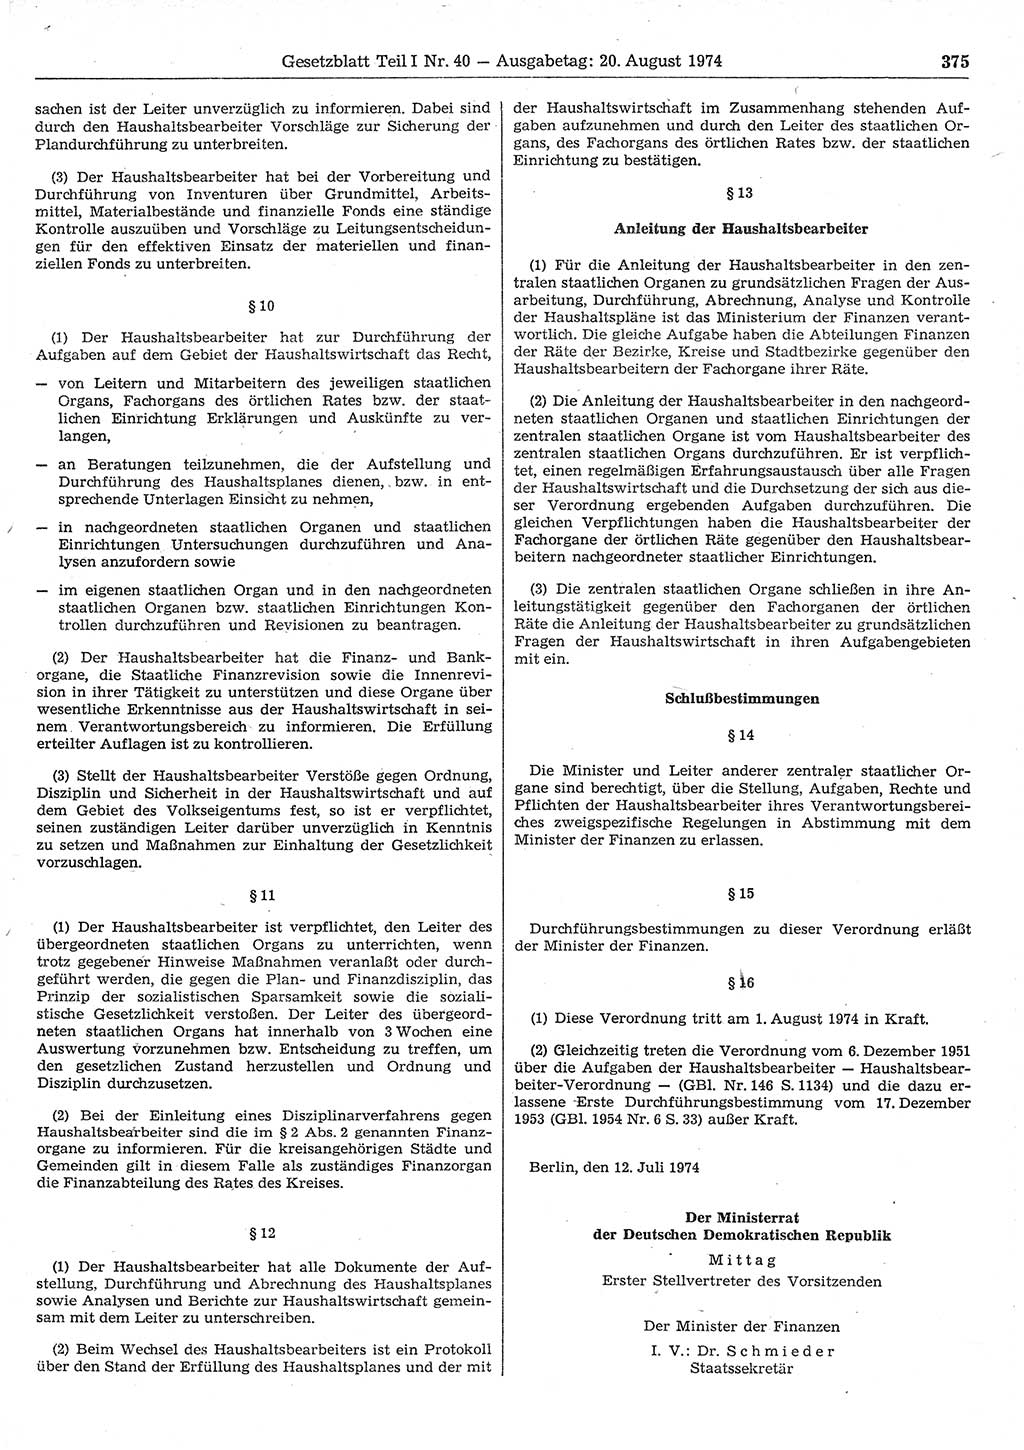 Gesetzblatt (GBl.) der Deutschen Demokratischen Republik (DDR) Teil Ⅰ 1974, Seite 375 (GBl. DDR Ⅰ 1974, S. 375)